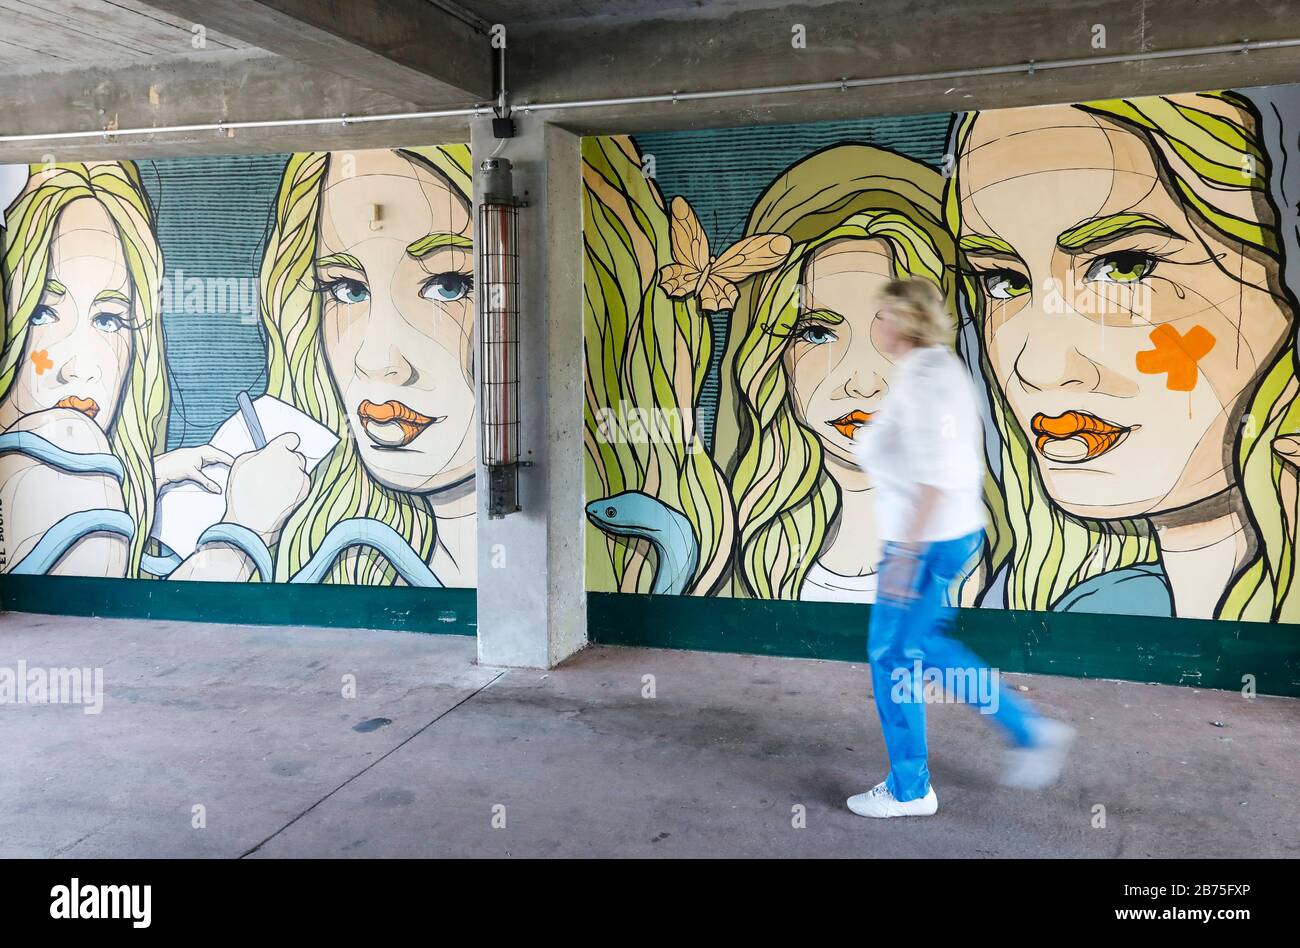 Ein Wandbild des Künstlers "El Boco", ausgestellt in der Holzmarktstraße 25 in Berlin. Mehr als 100 Künstler zeigen ihre sogenannten Wandbilder, Wandbilder, in der ganzen Stadt wie in einer Freilichtgalerie. [Automatisierte Übersetzung] Stockfoto